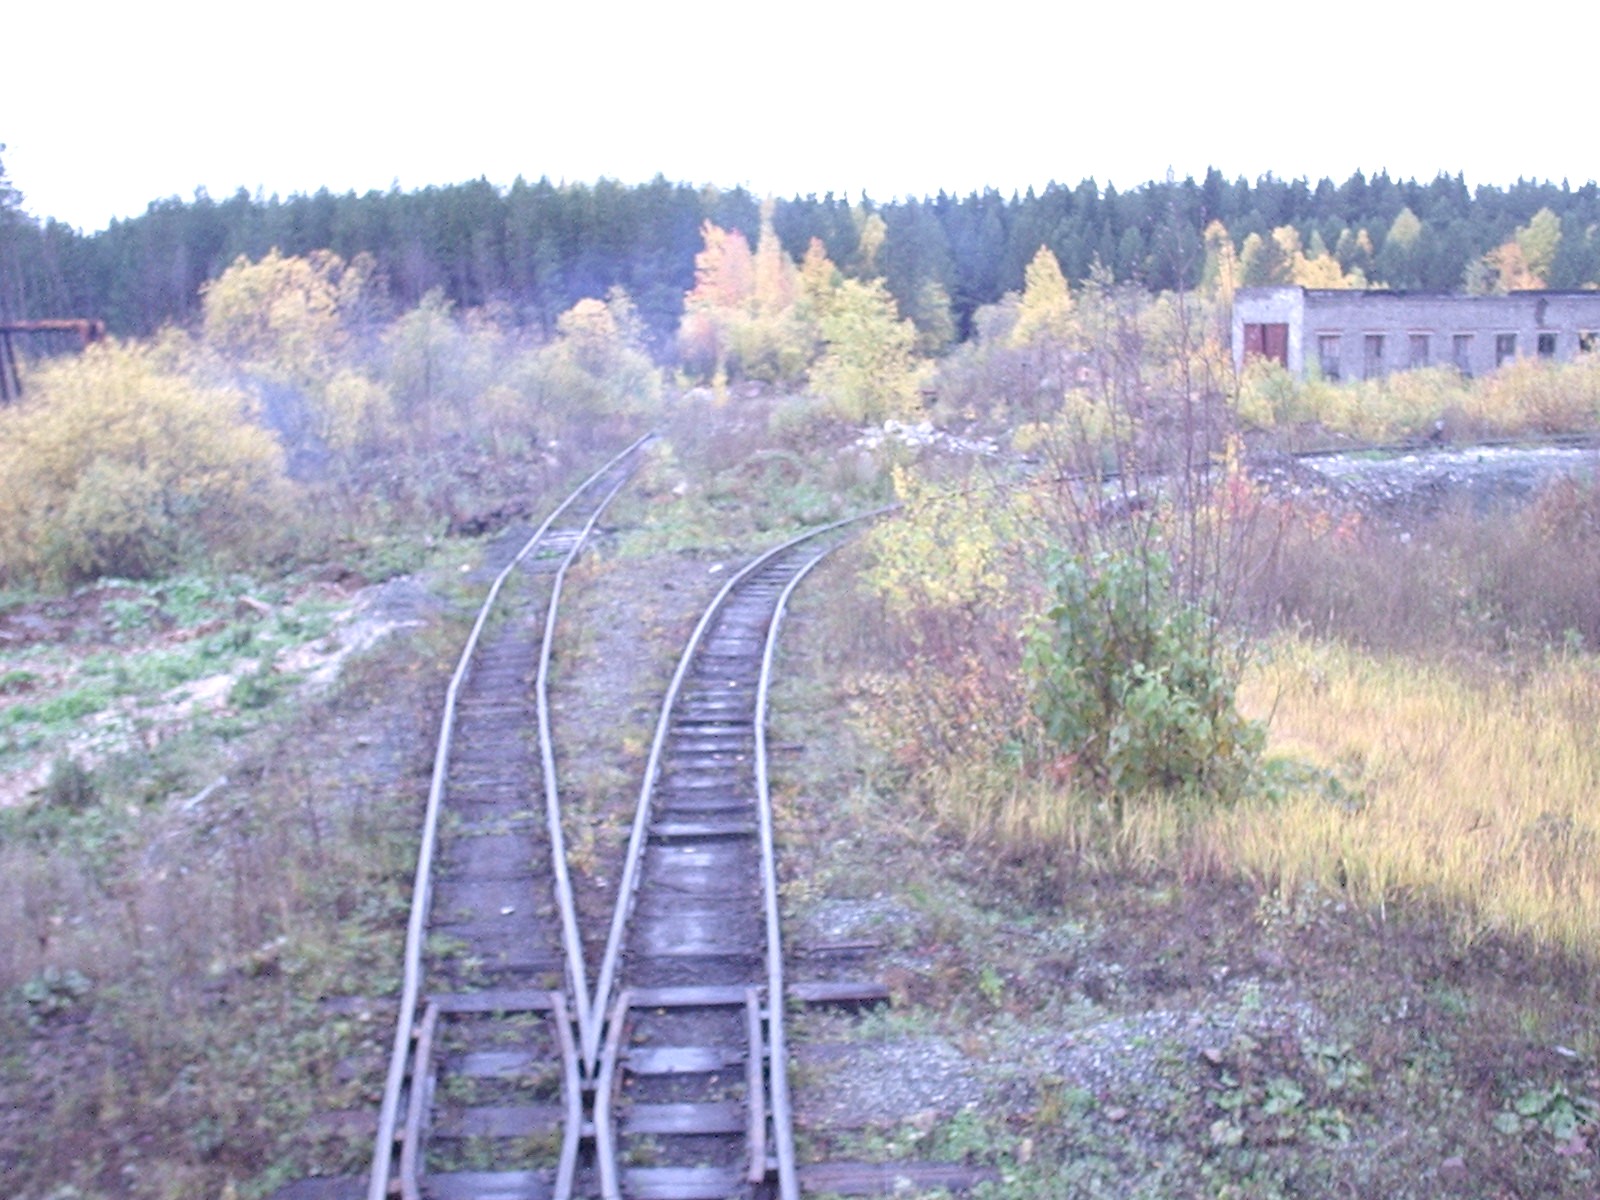 Висимо-Уткинская узкоколейная железная дорога  - фотографии, сделанные в 2006 году (часть 3)